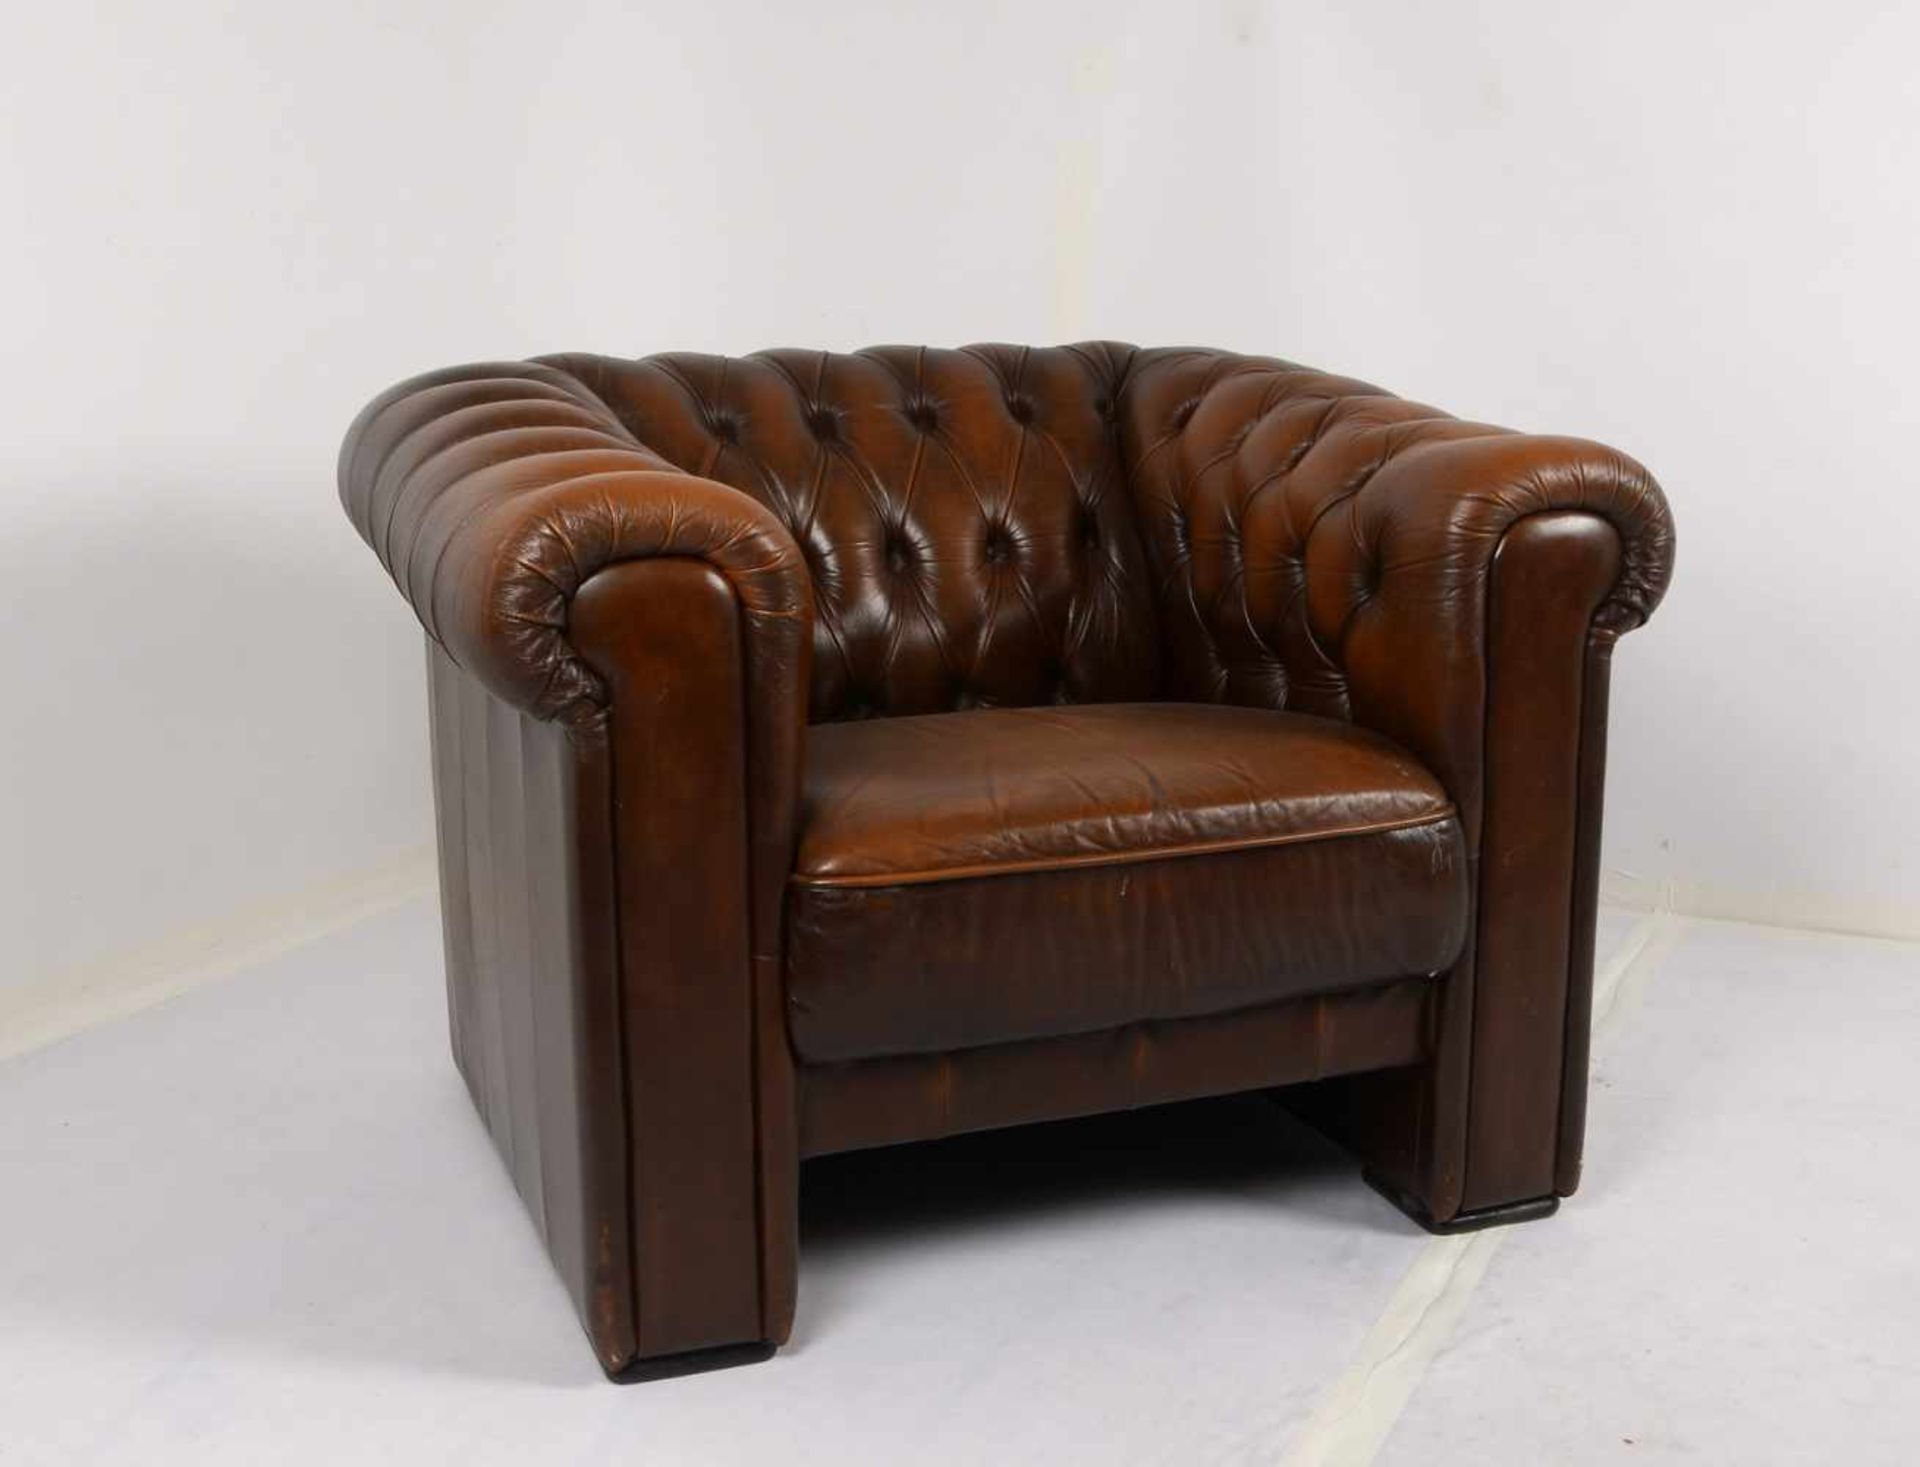 Chesterfield-Sofa/Zweisitzer, Polsterung aus braunem Leder/geknüpft, in gutem Erhaltungszustand; - Bild 2 aus 2